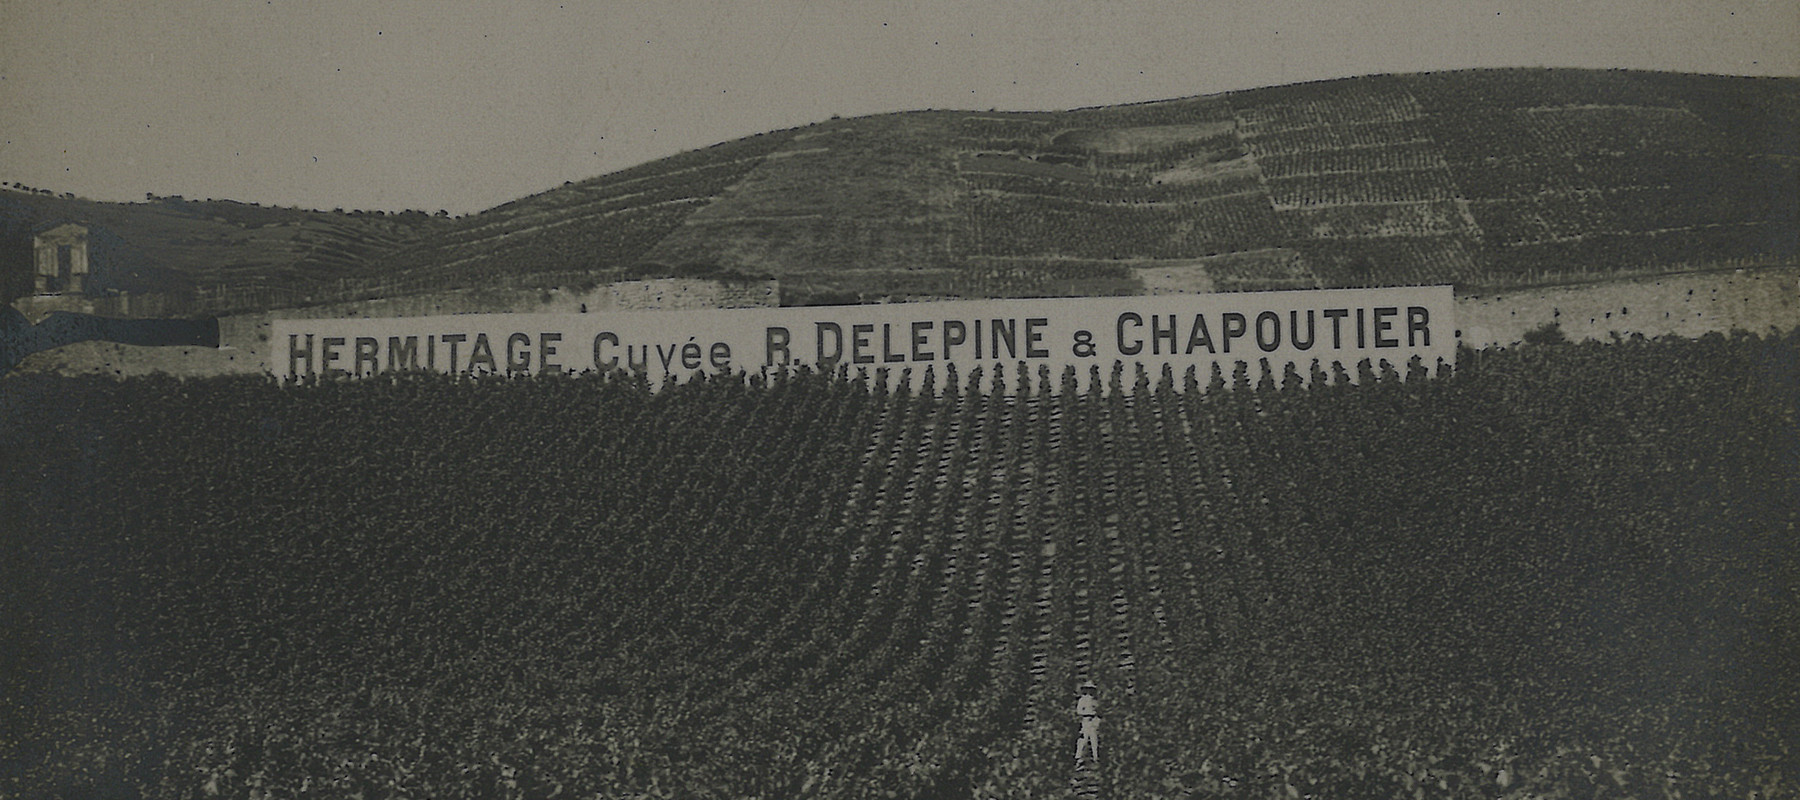 Photo des vignes de la Maison au pied de la colline de l'Hermitage avec un mur en fond indiquant "Hermitage Cuvée Delepine & Chapoutier".